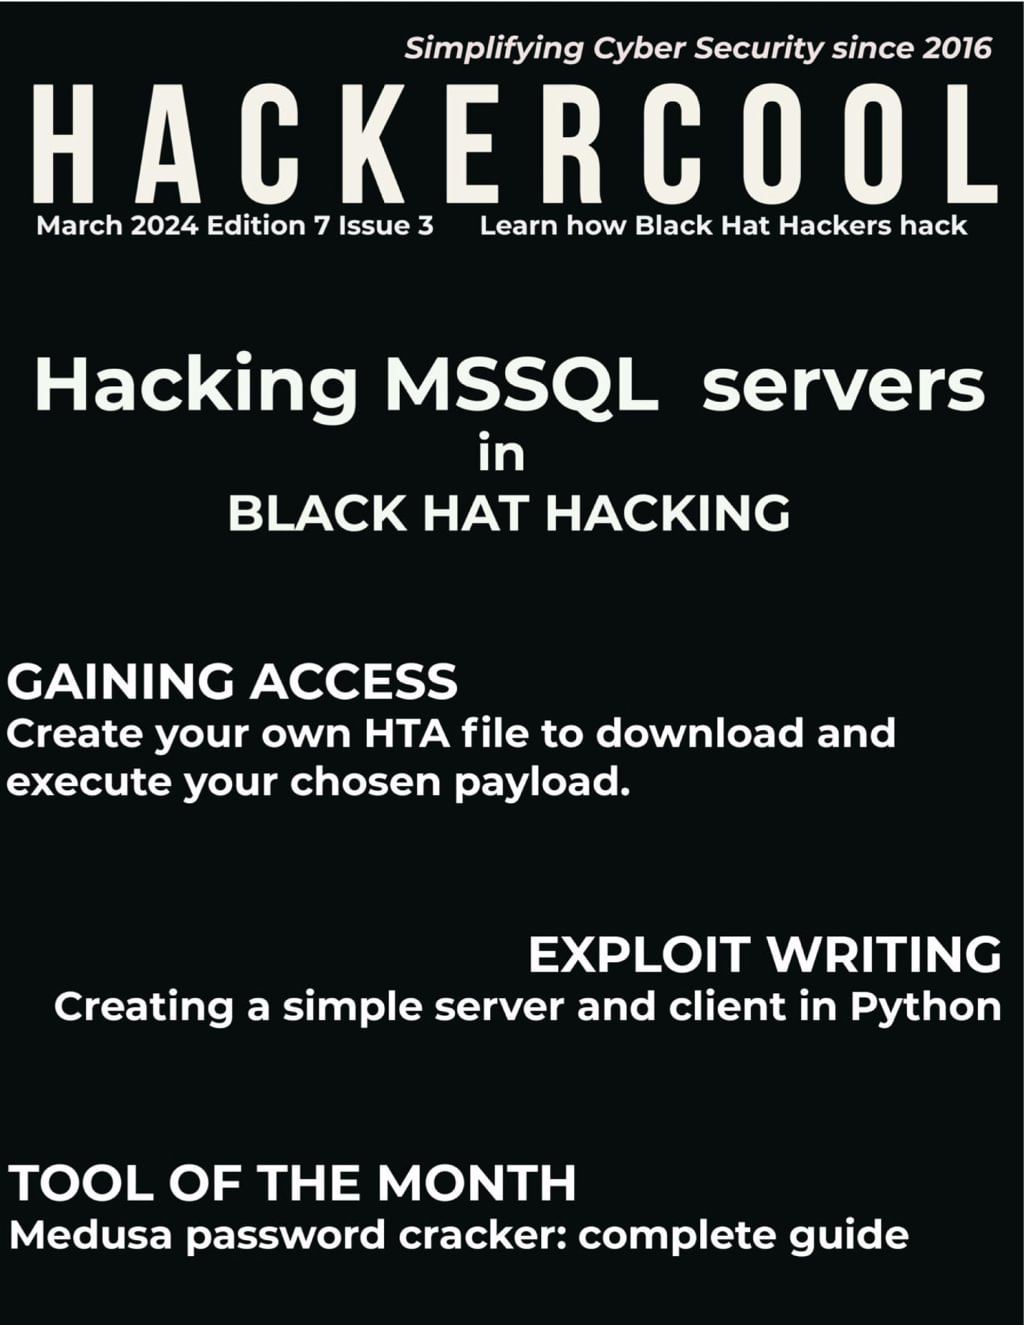 Hackercool - March 2024